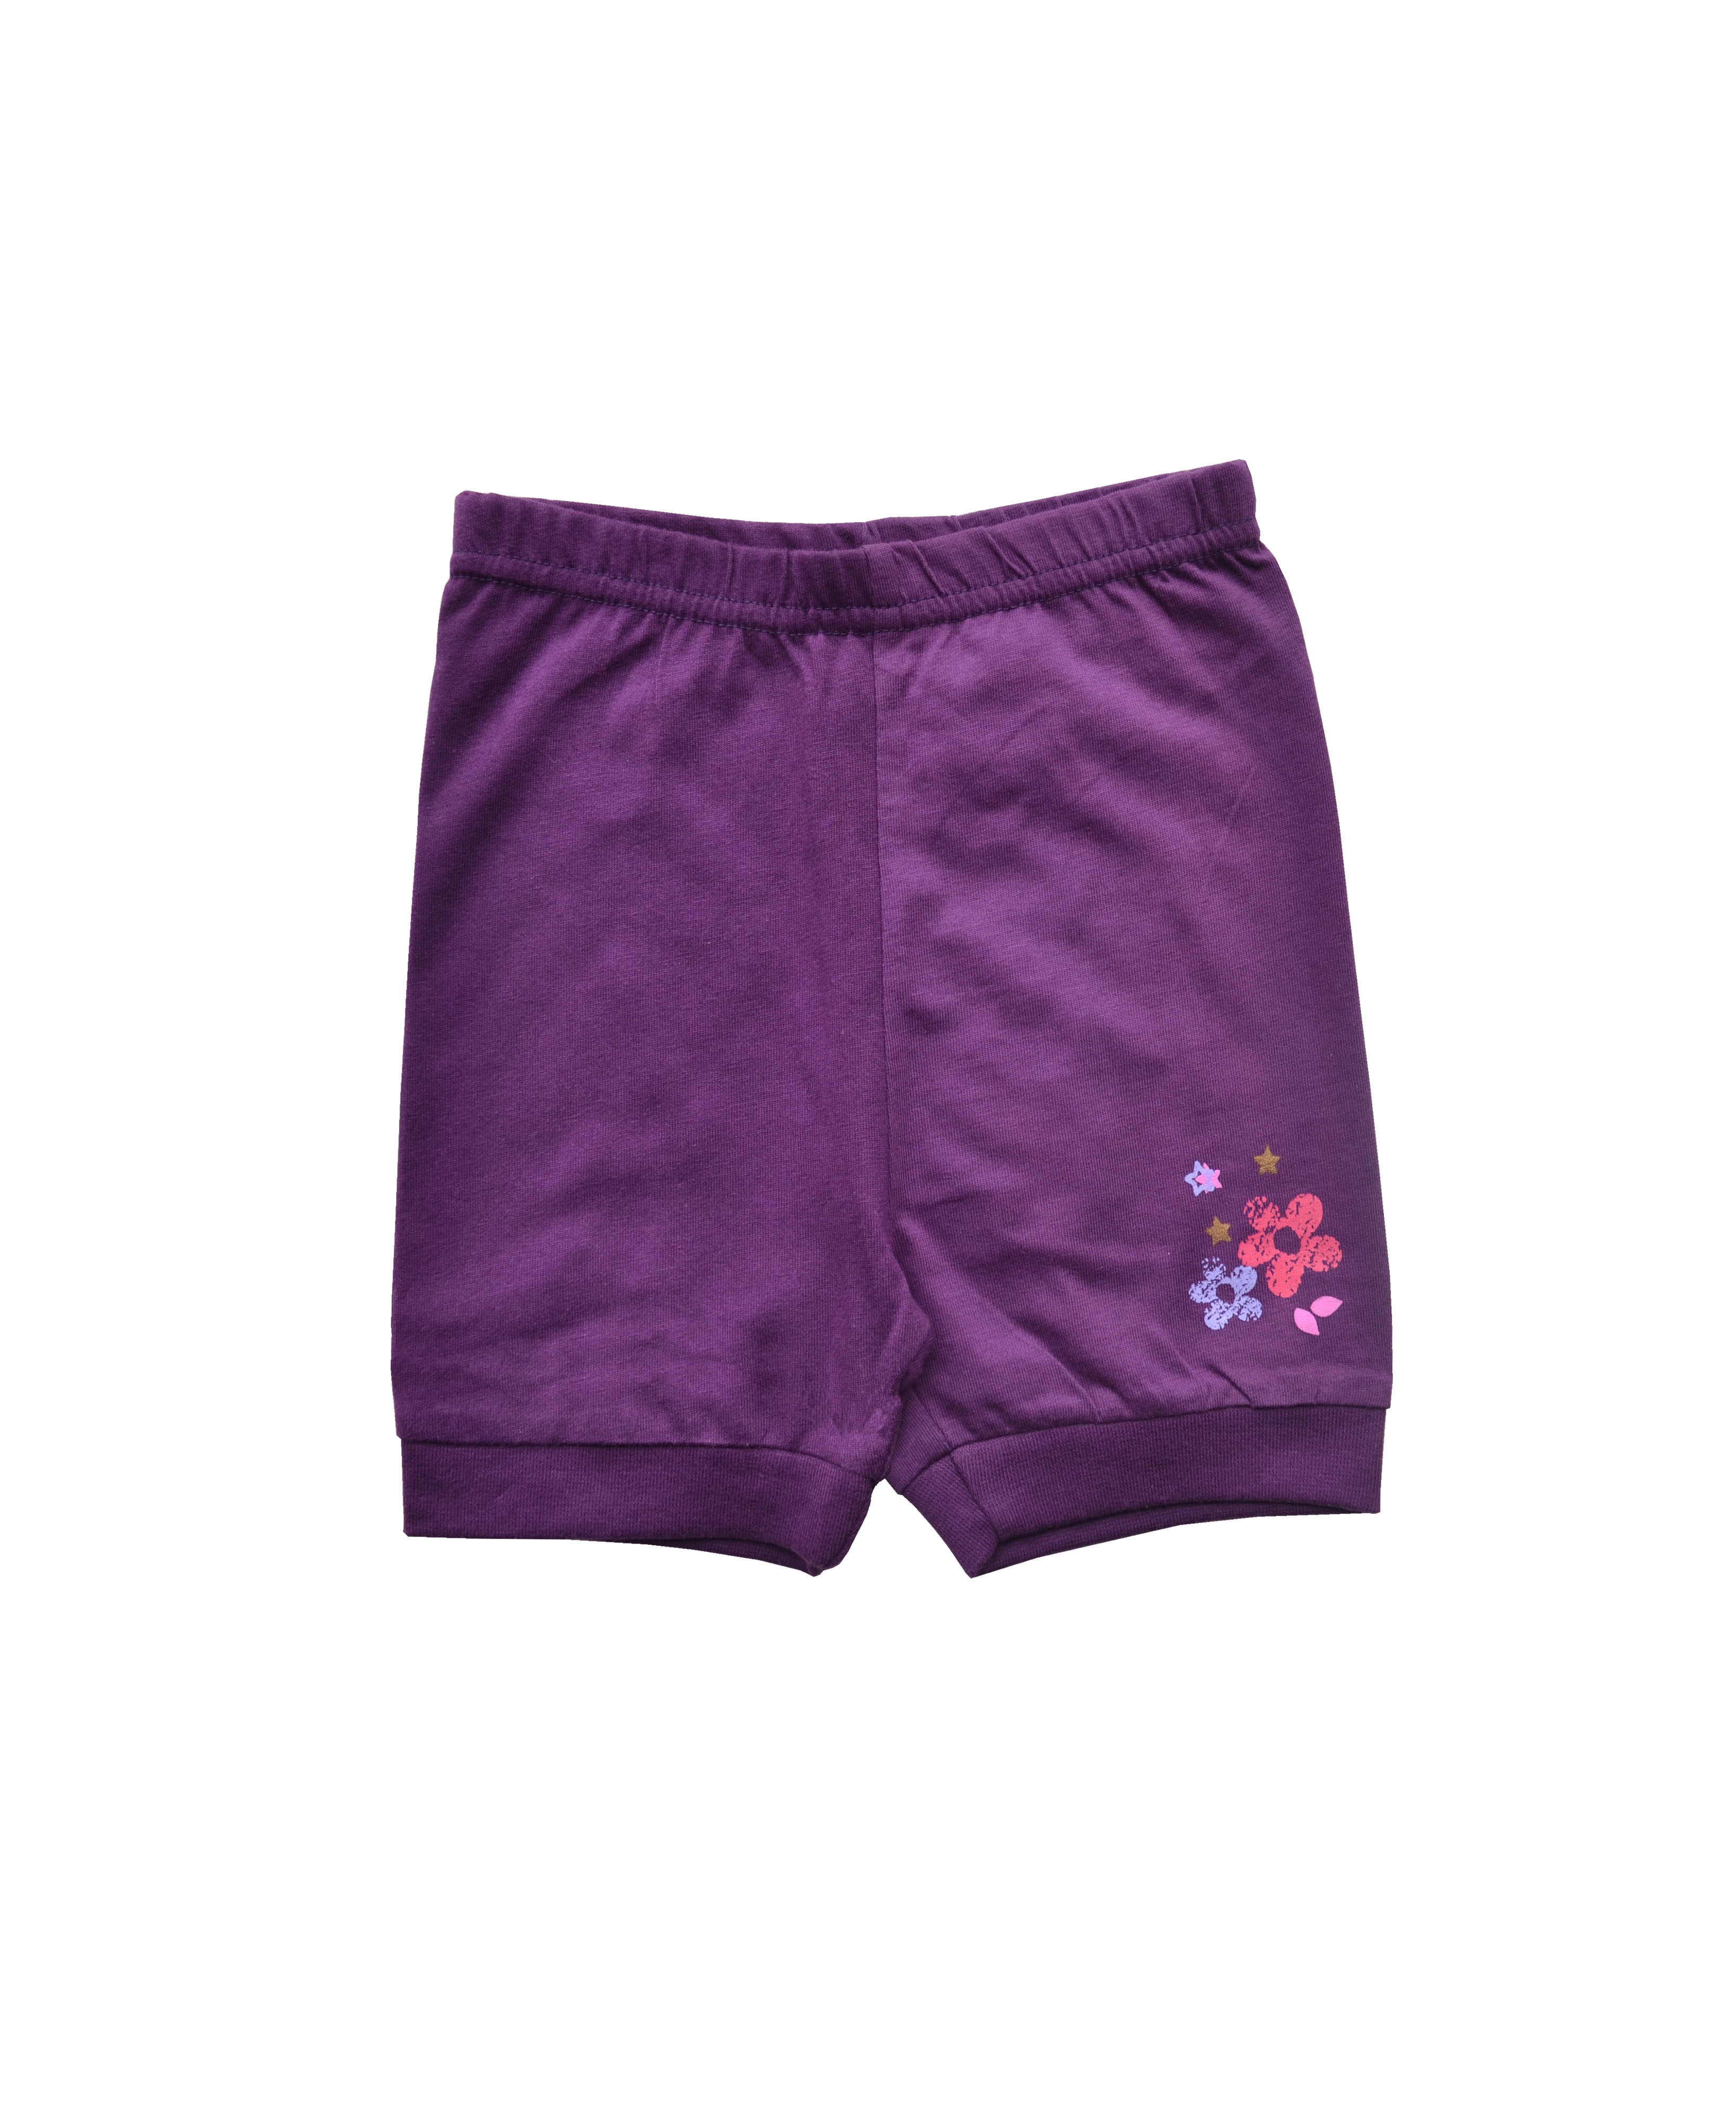 Babeez | Flower Print On Girls Shorts (100% Cotton Jersey) undefined